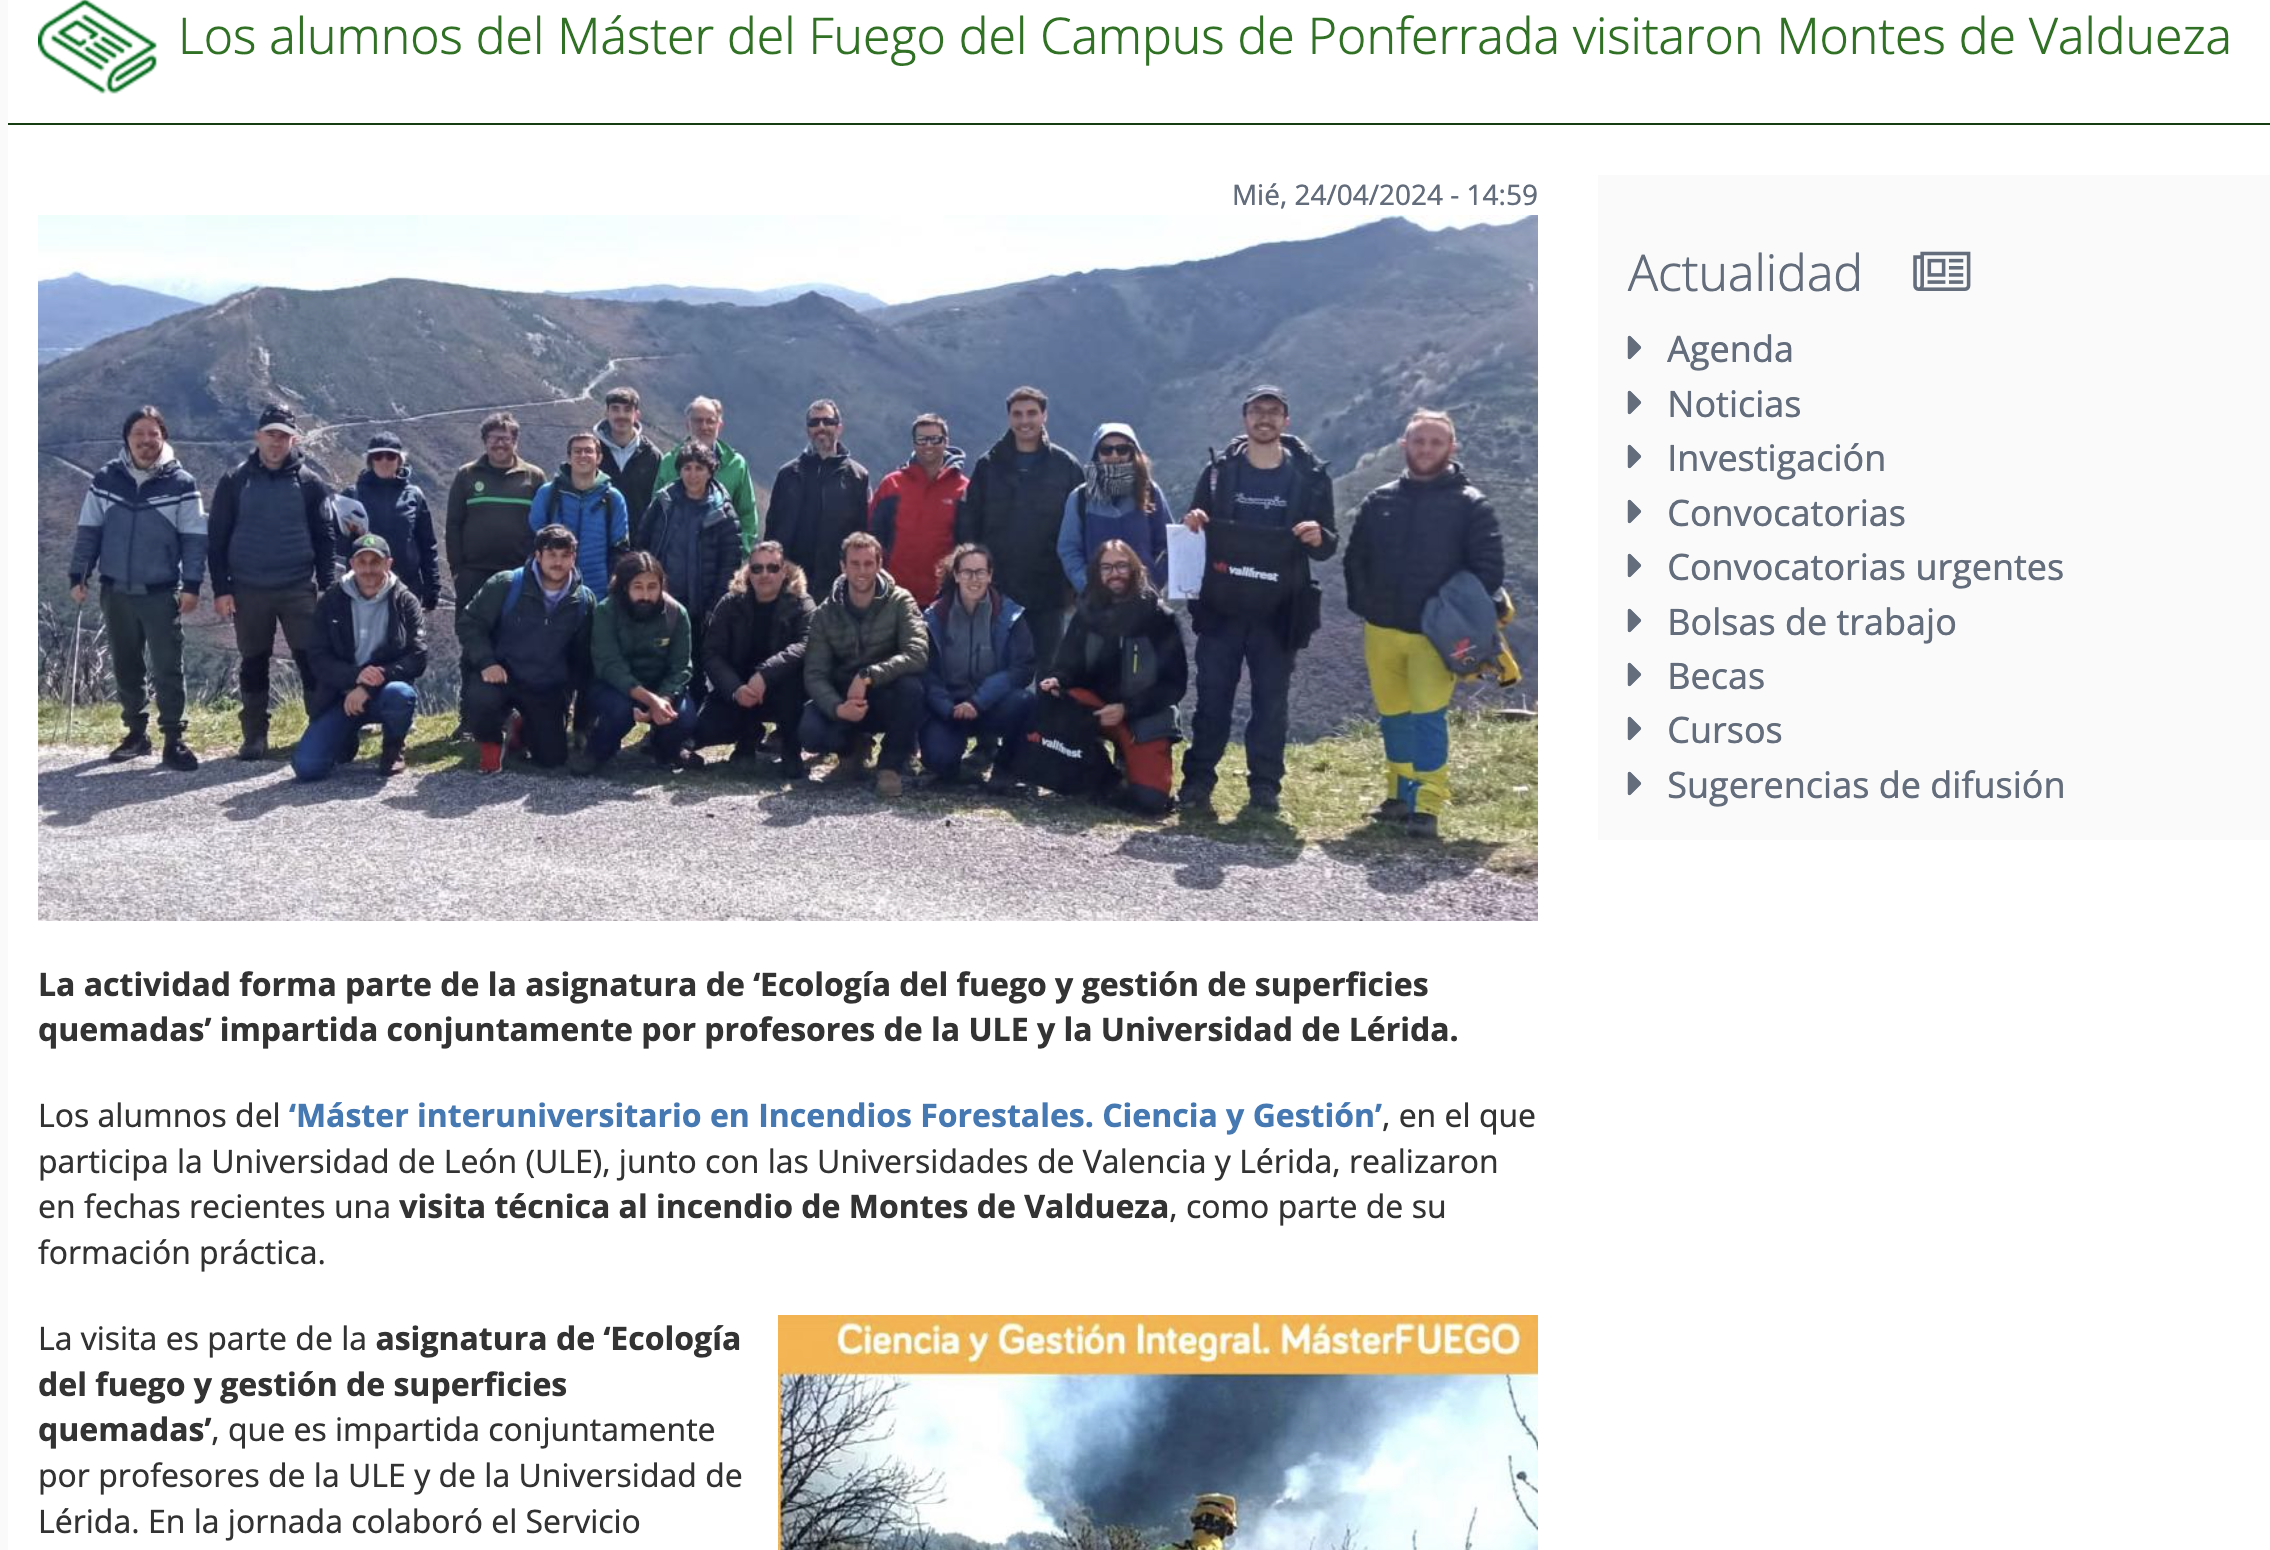 Los alumnos del Máster del Fuego del Campus de Ponferrada visitaron Montes de Valdueza